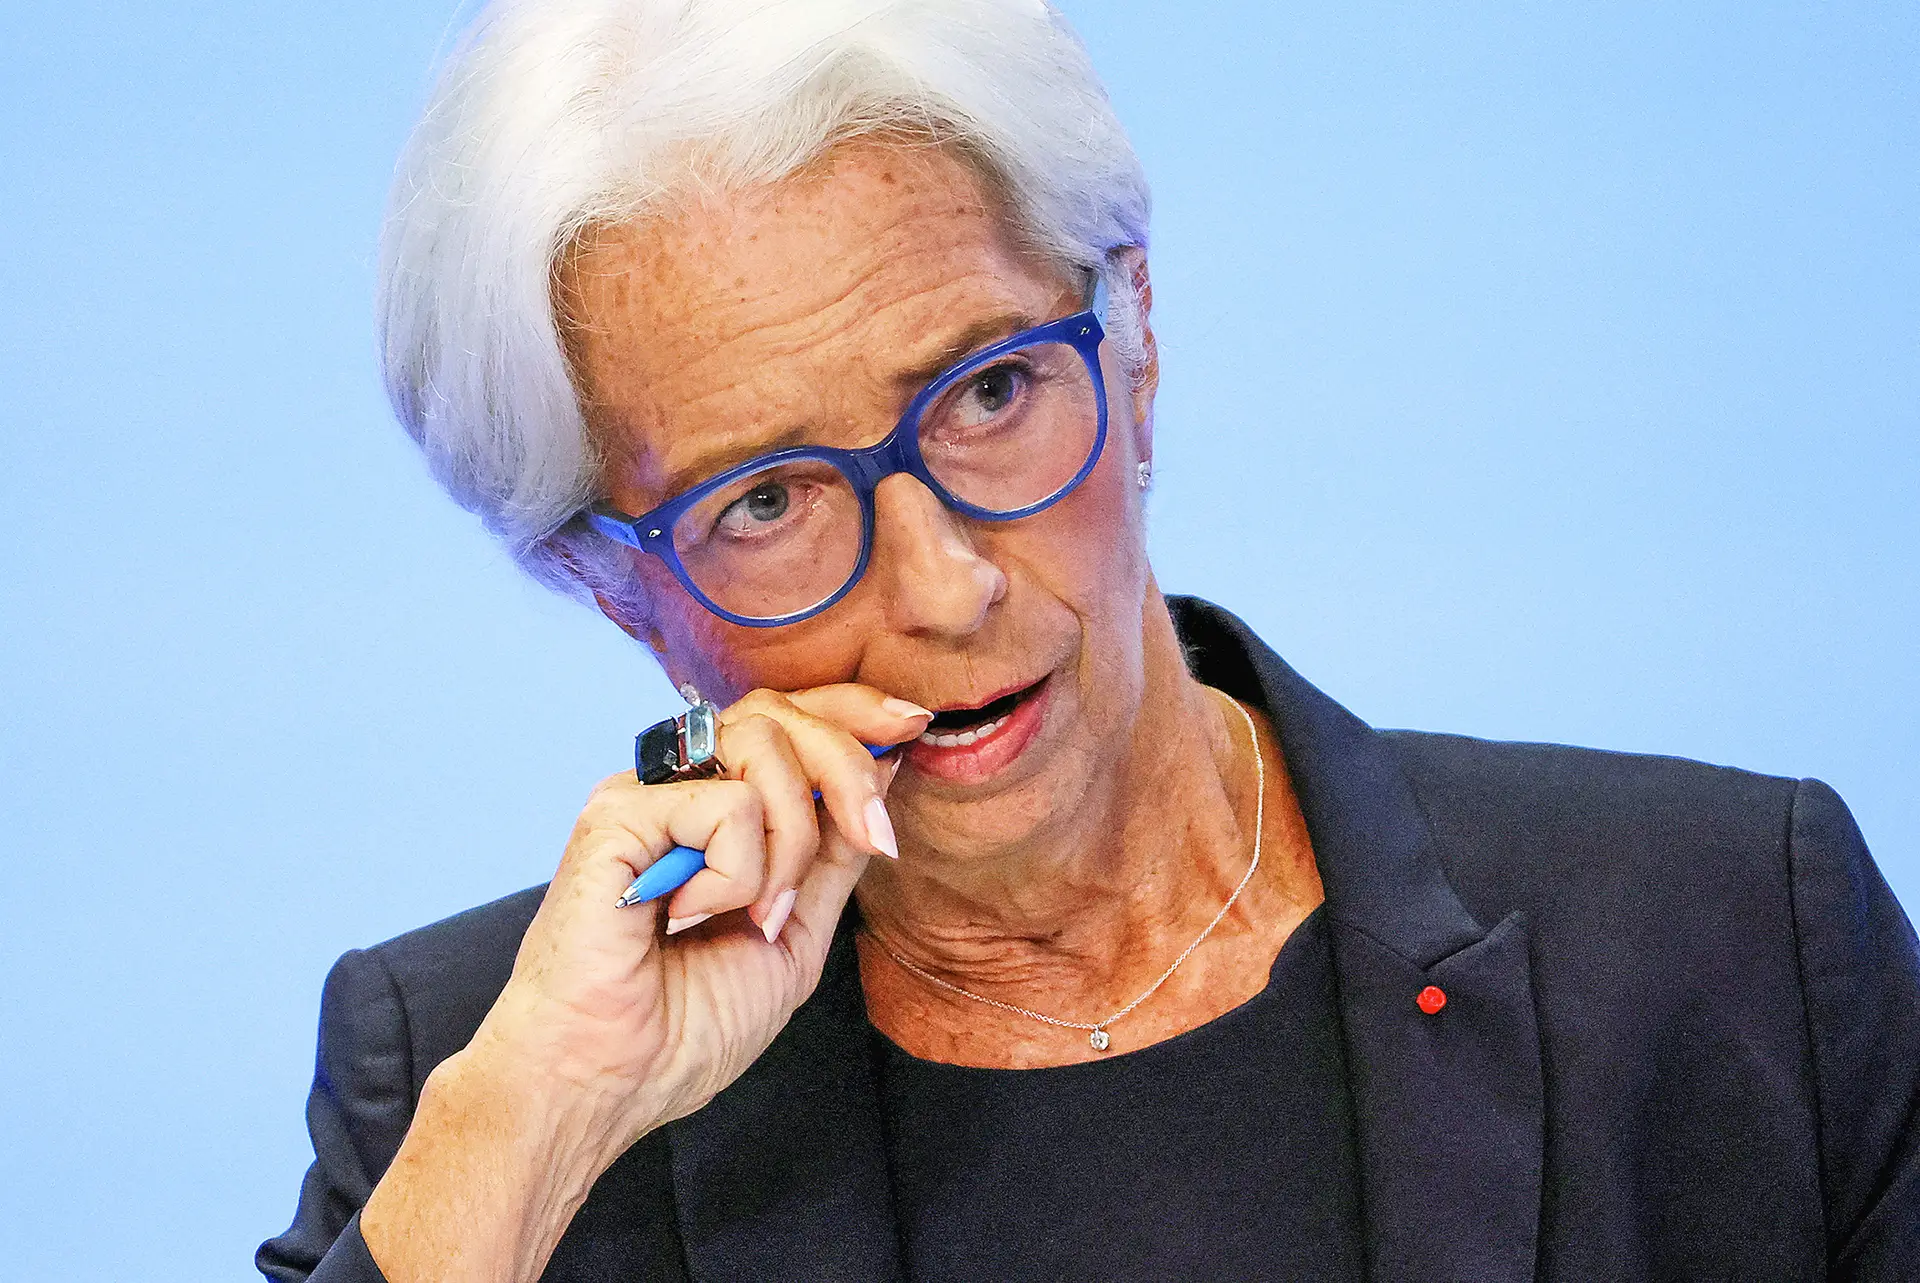 Lagarde garante que o BCE não minimiza as tensões financeiras. Mas confia na solidez da banca da zona euro